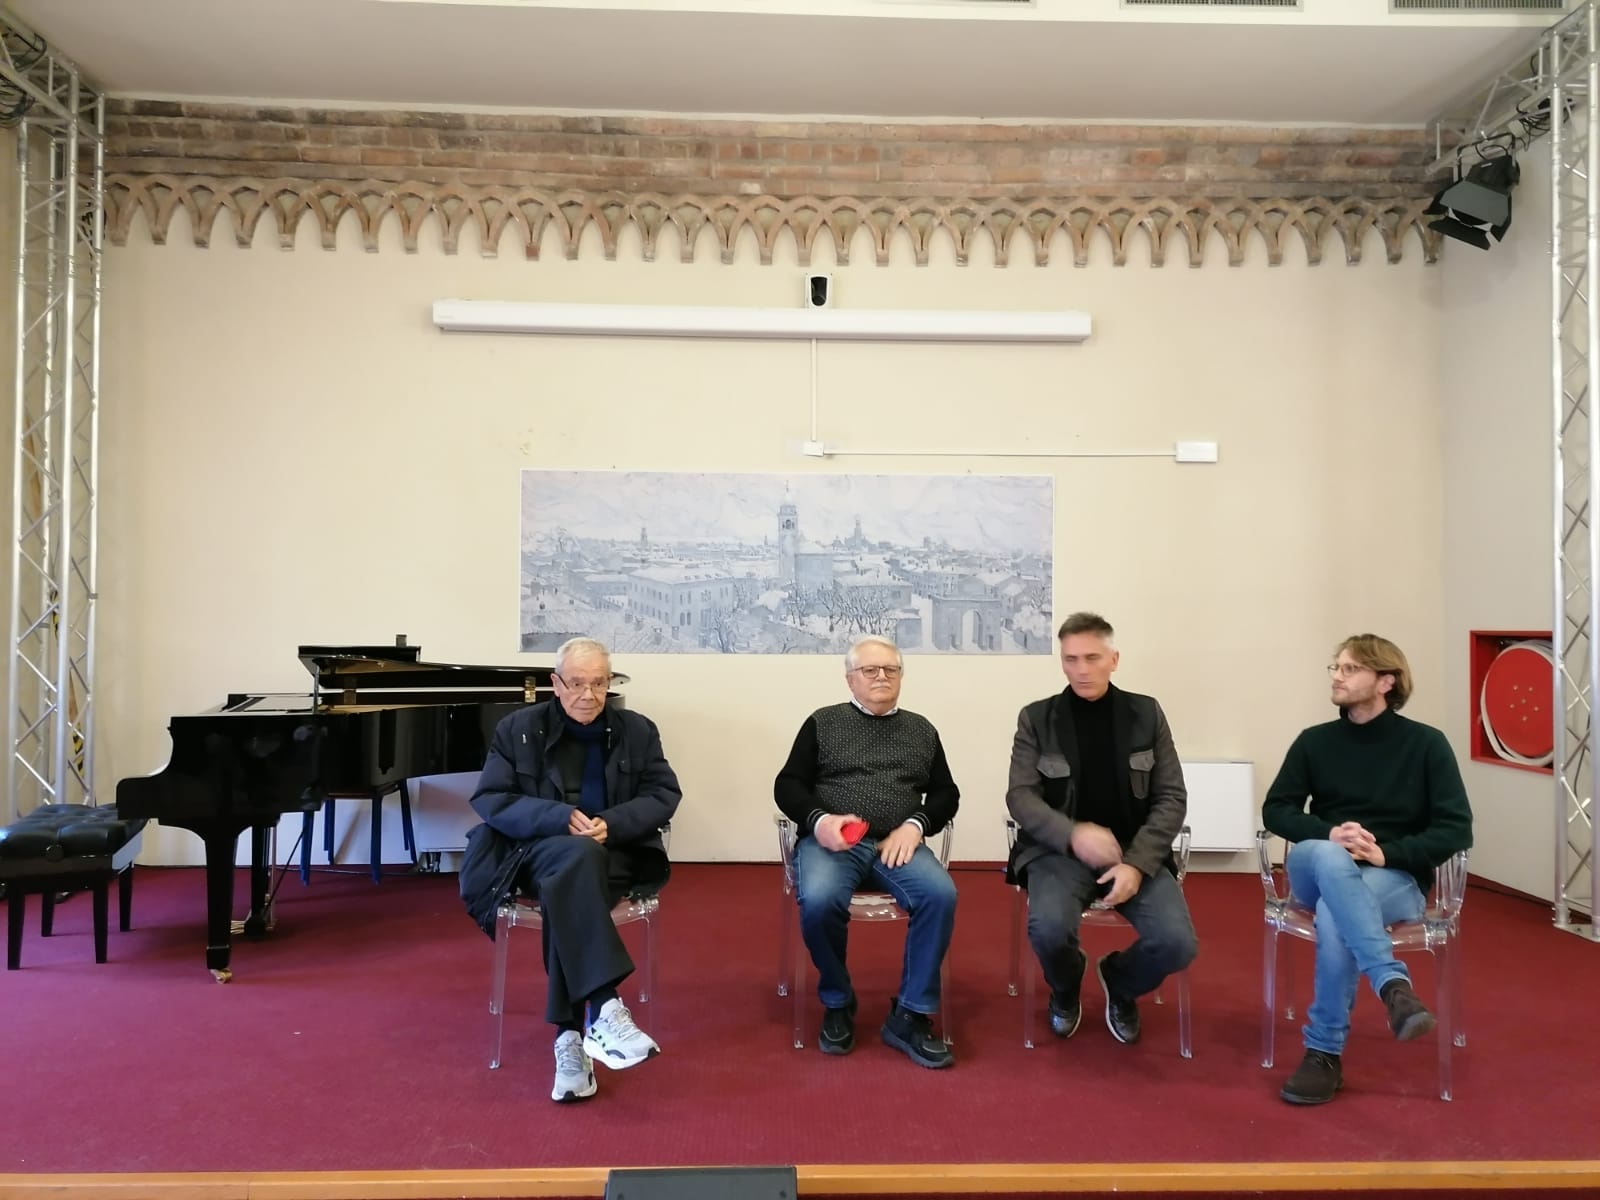 Presentato al Teatro San Domenico il nuovo consulente artistico: Maurizio Colombi